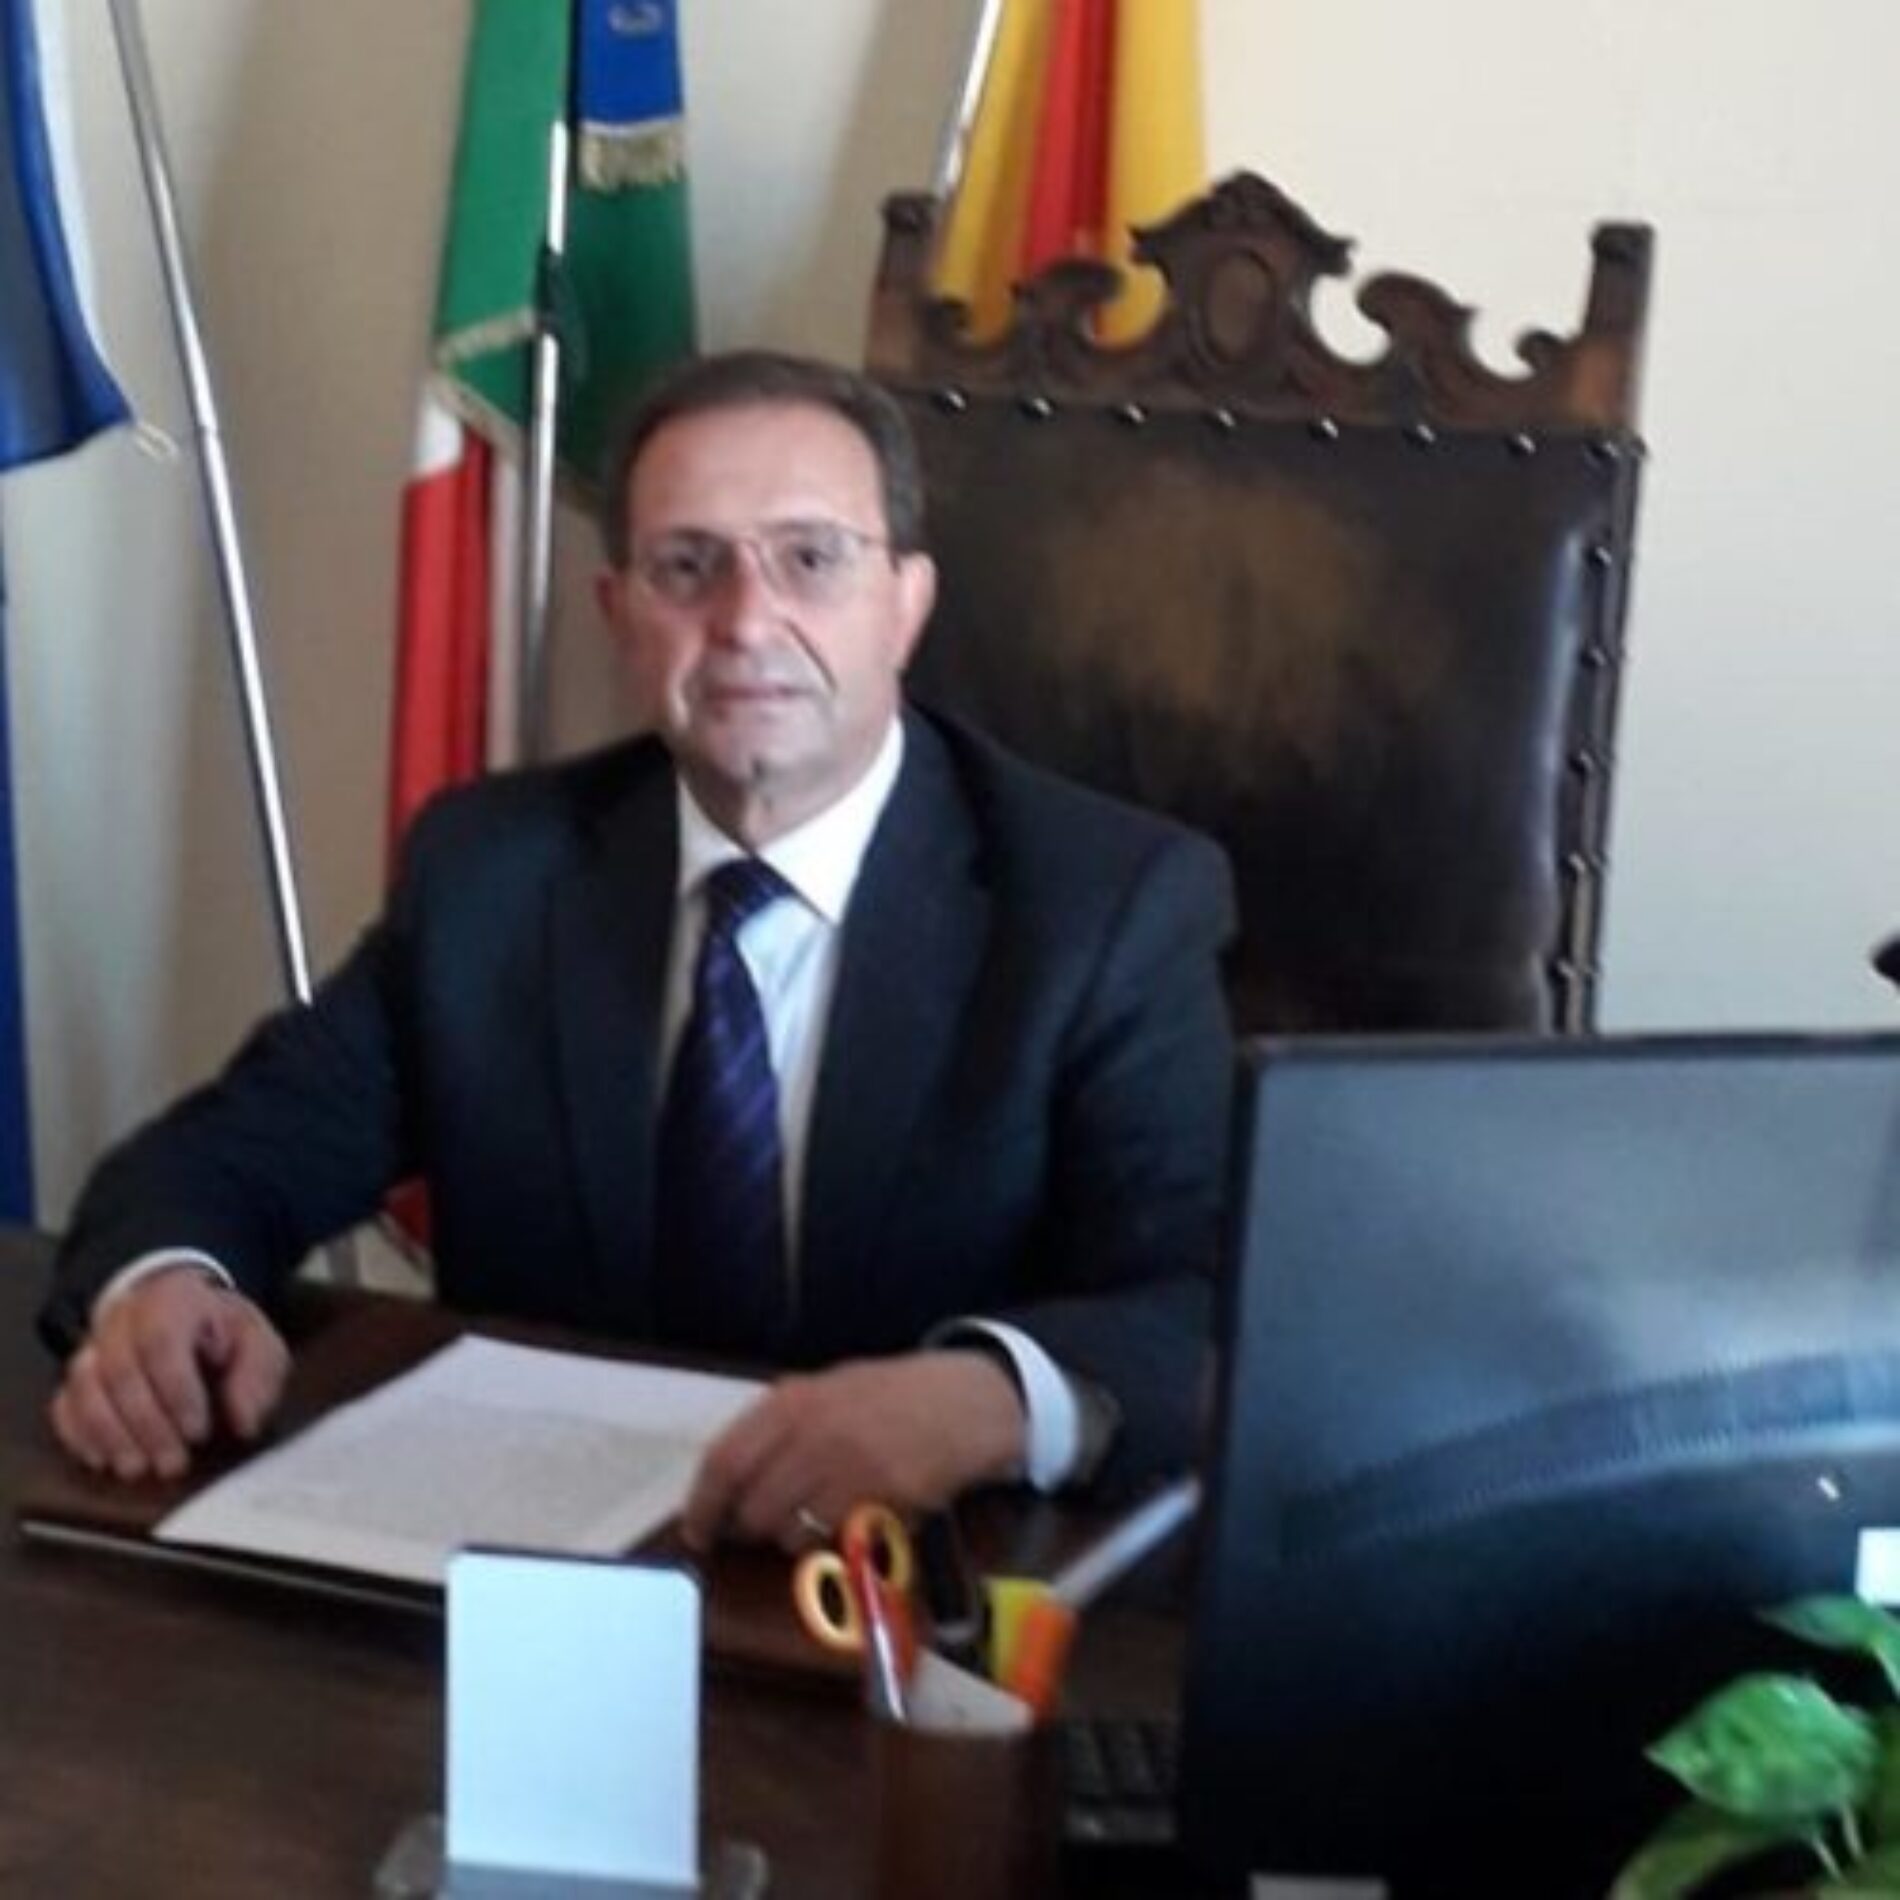 PIETRAPERZIA. Il sindaco Salvuccio Messina ha azzerato, con determina sindacale, la giunta municipale.